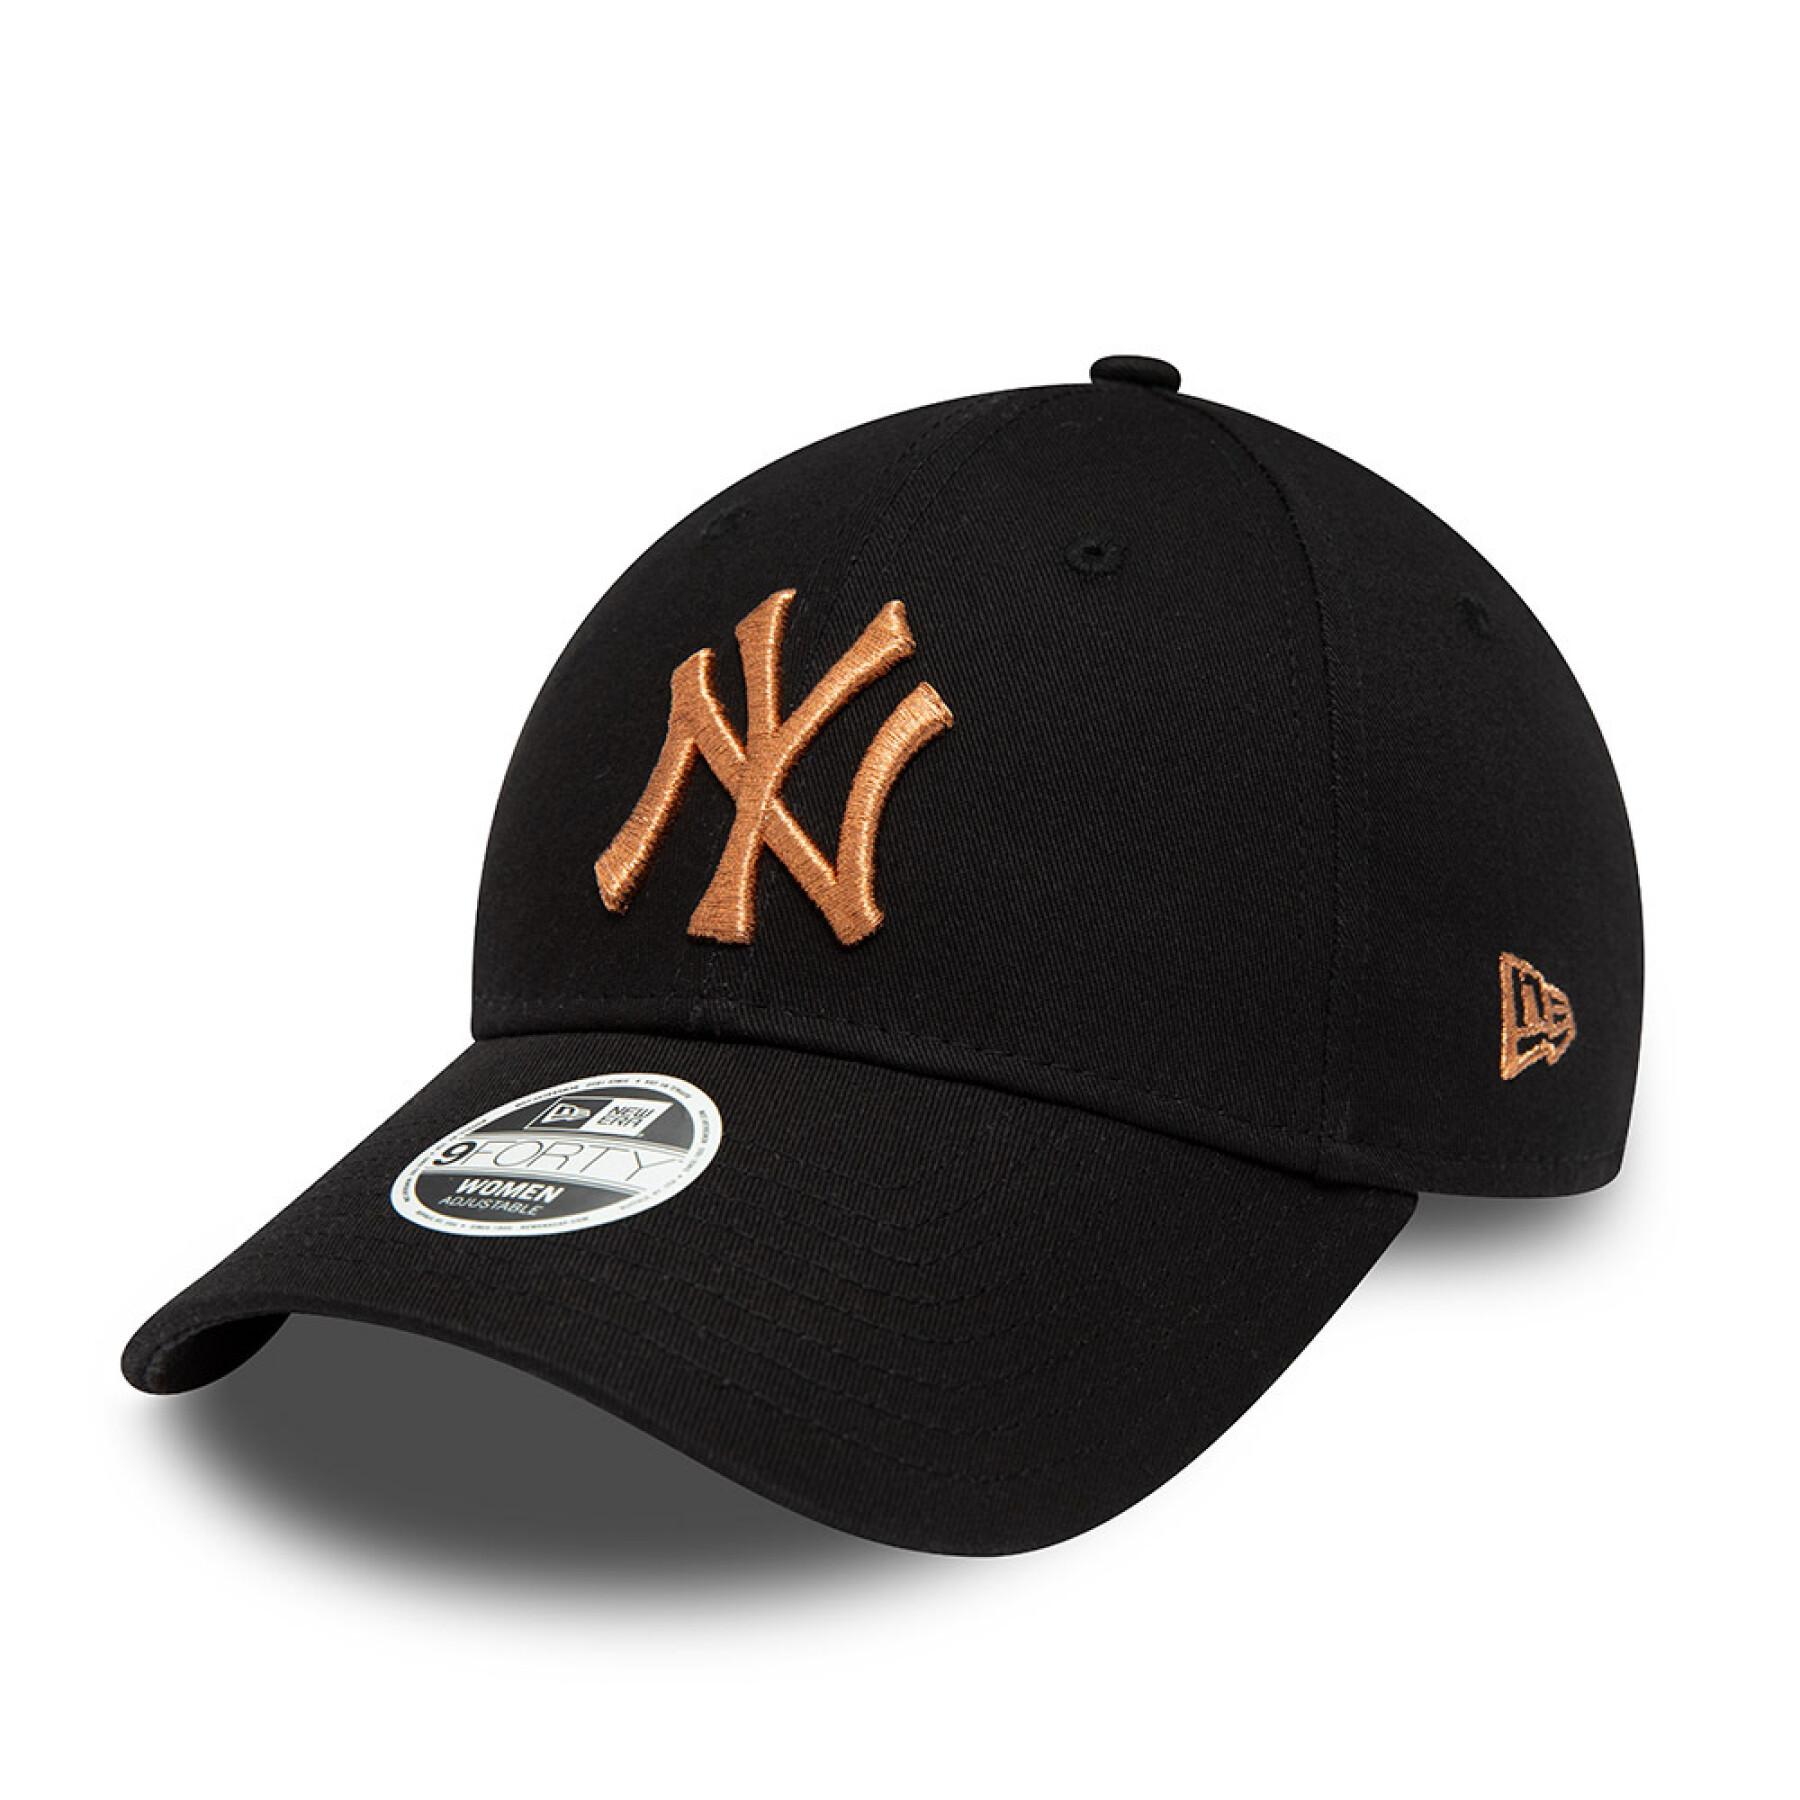 Damespet New York Yankees Metallic Logo